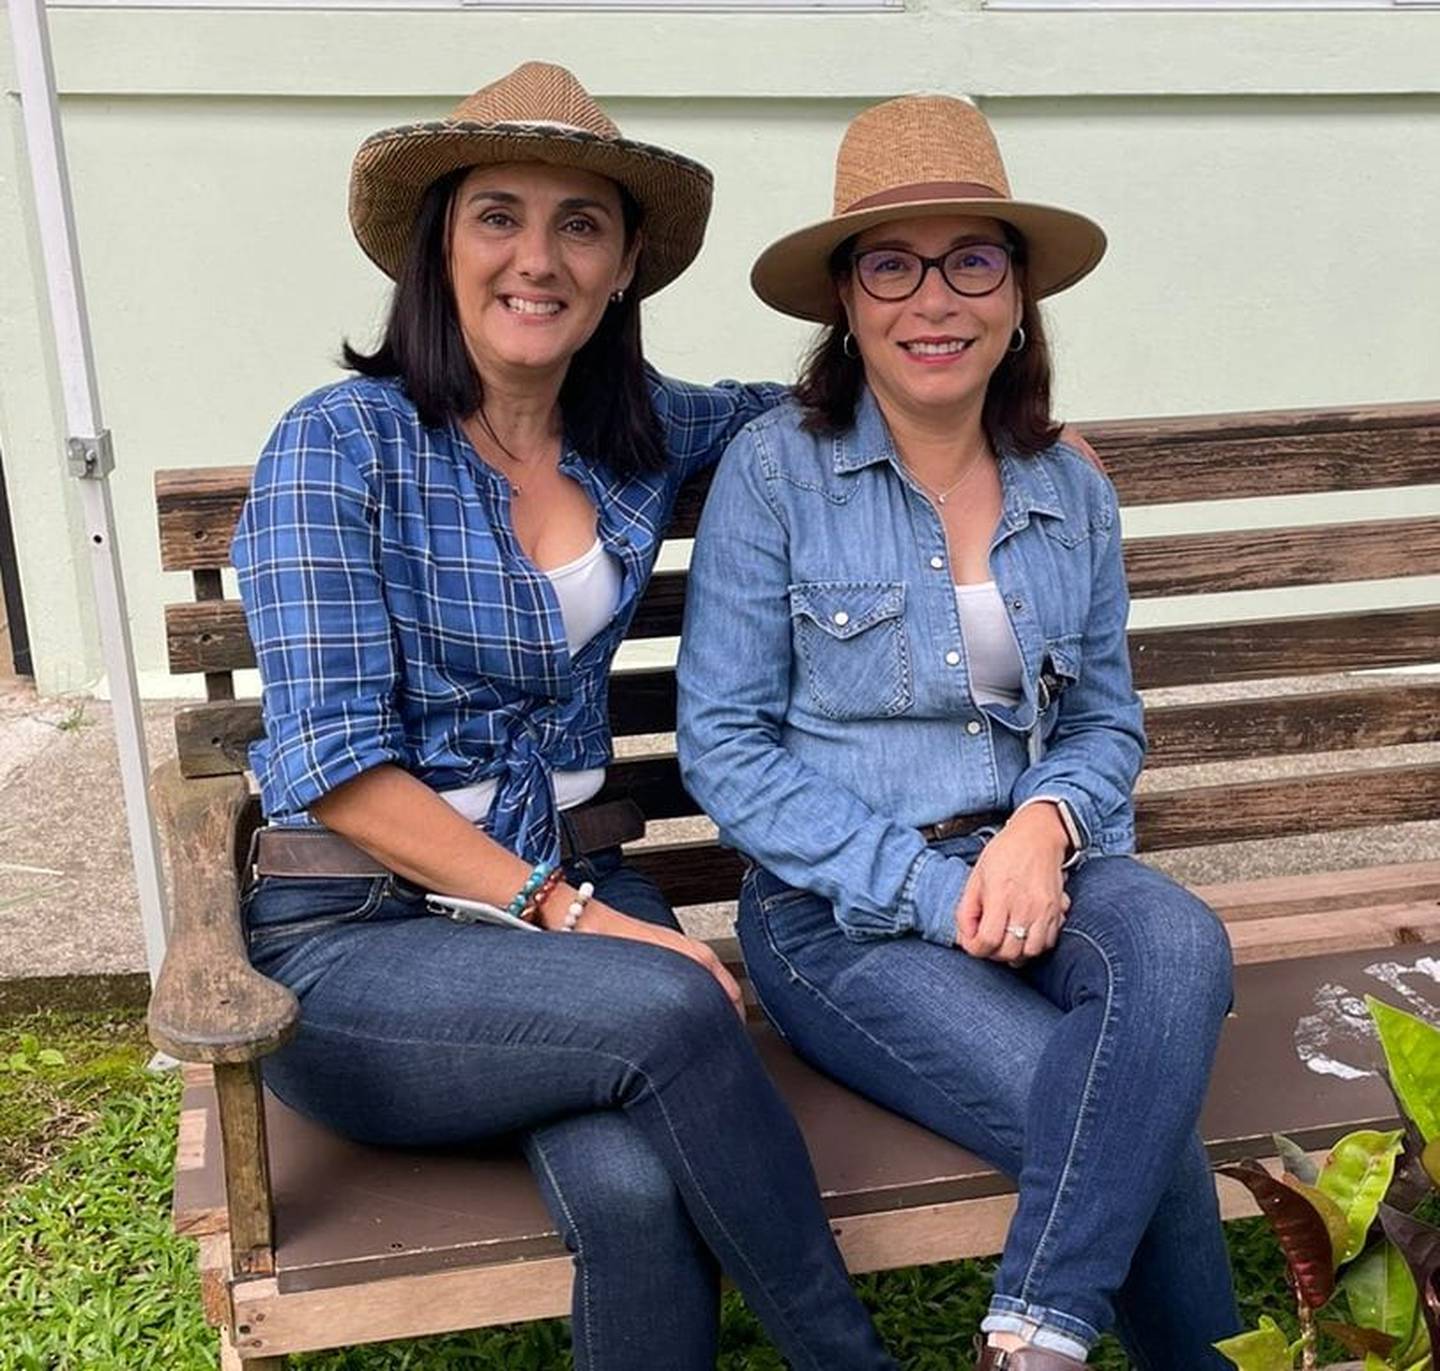 La sicóloga Cinthia Delgado Solera y la socióloga Susana Hernández Durán, comprendieron en el 2020 que les urgía un pasatiempo que las distrajera del gran estrés y ansiedad que les producía la pandemia por el covid-19, por eso se pusieron a tejer.